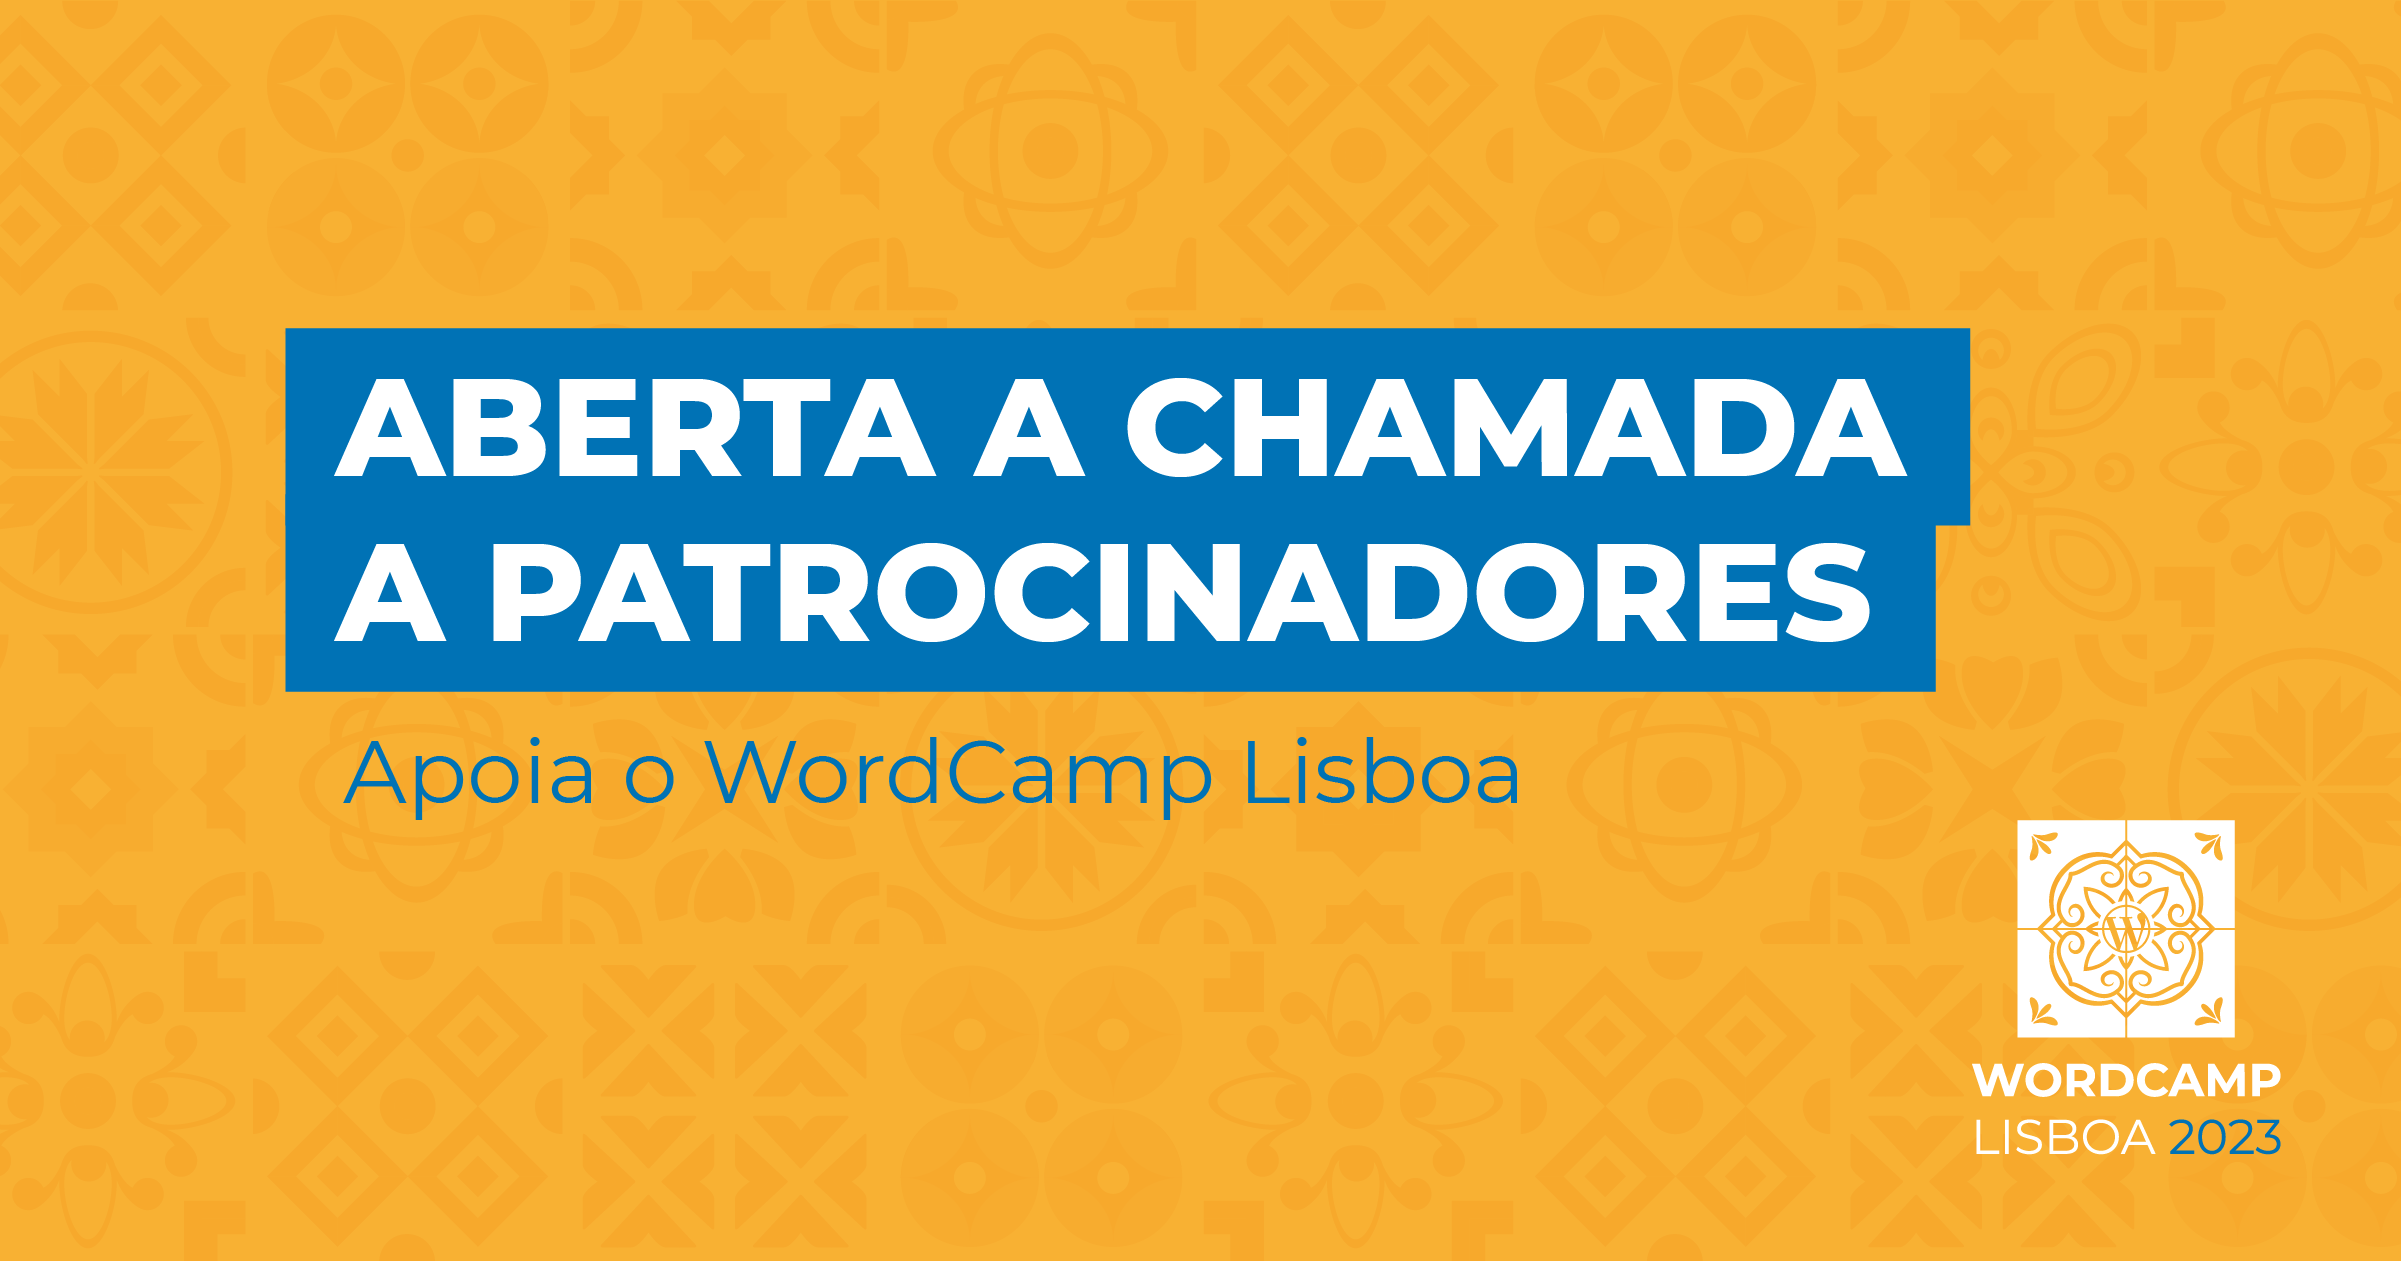 Aberta a chamada a patrocinadores – apoia o WordCamp Lisboa